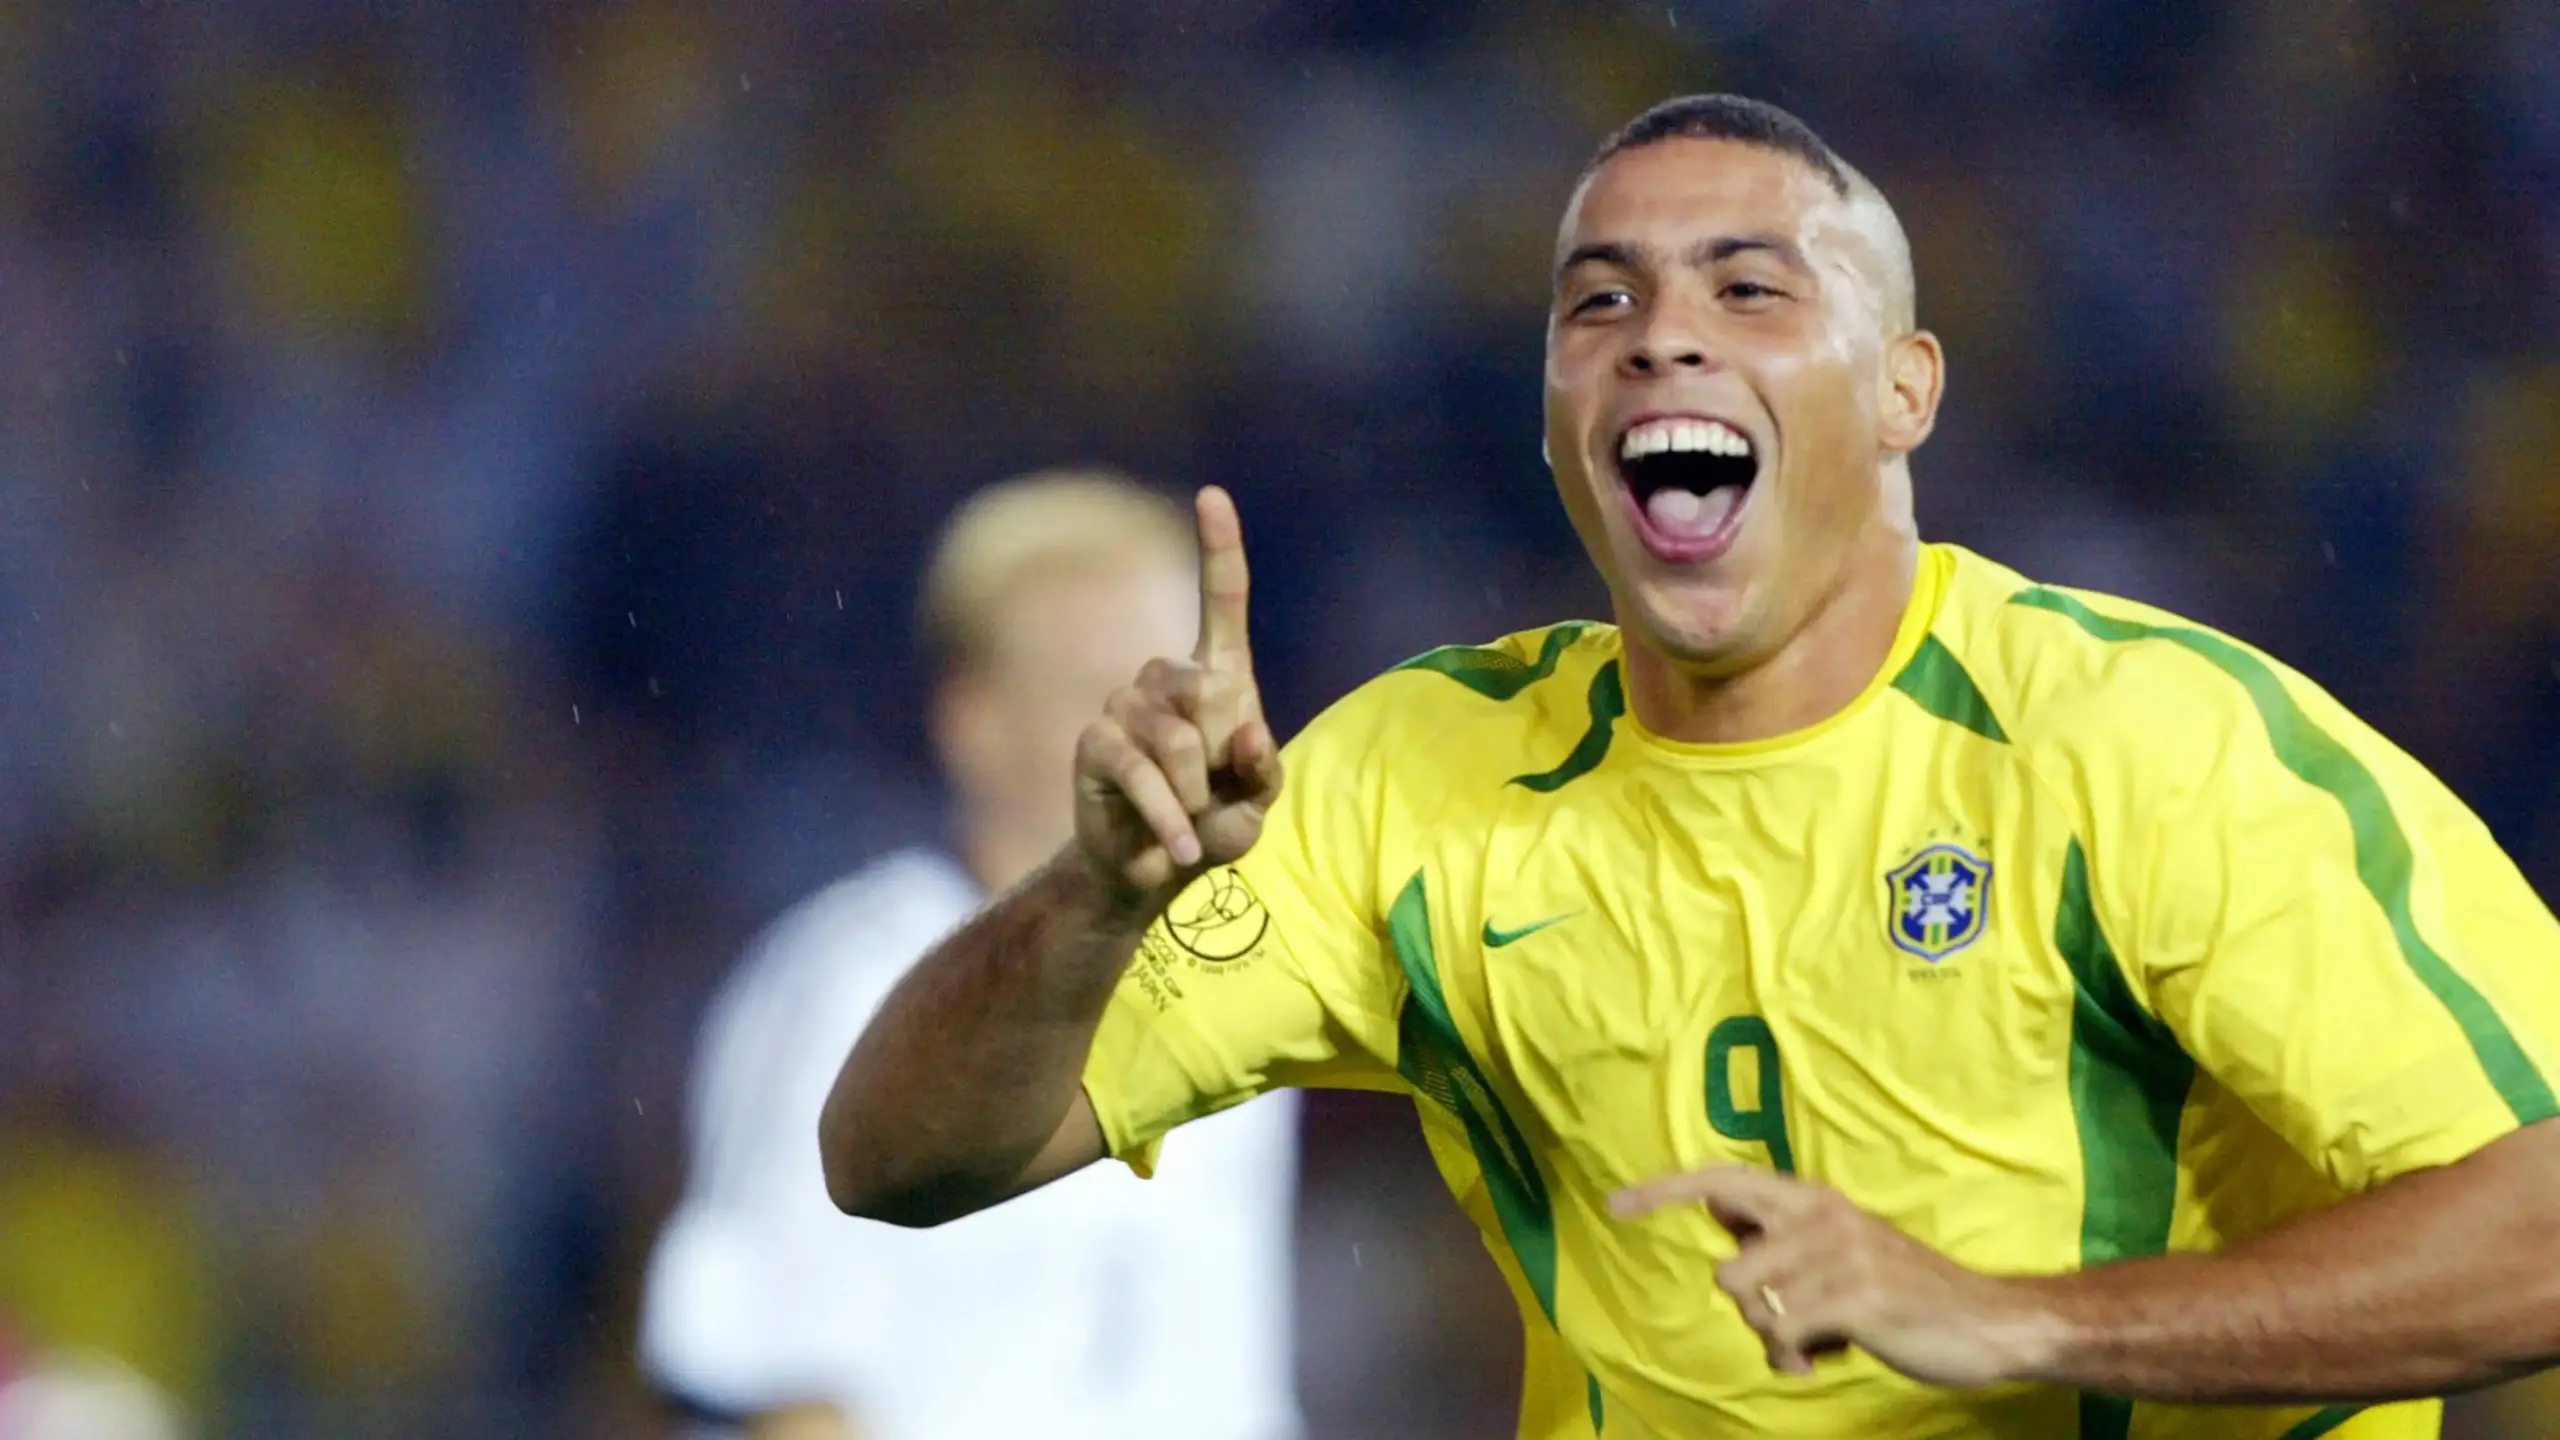 Ronaldo Béo là một bảo vật quý giá trong kho tàng bóng đá thế giới